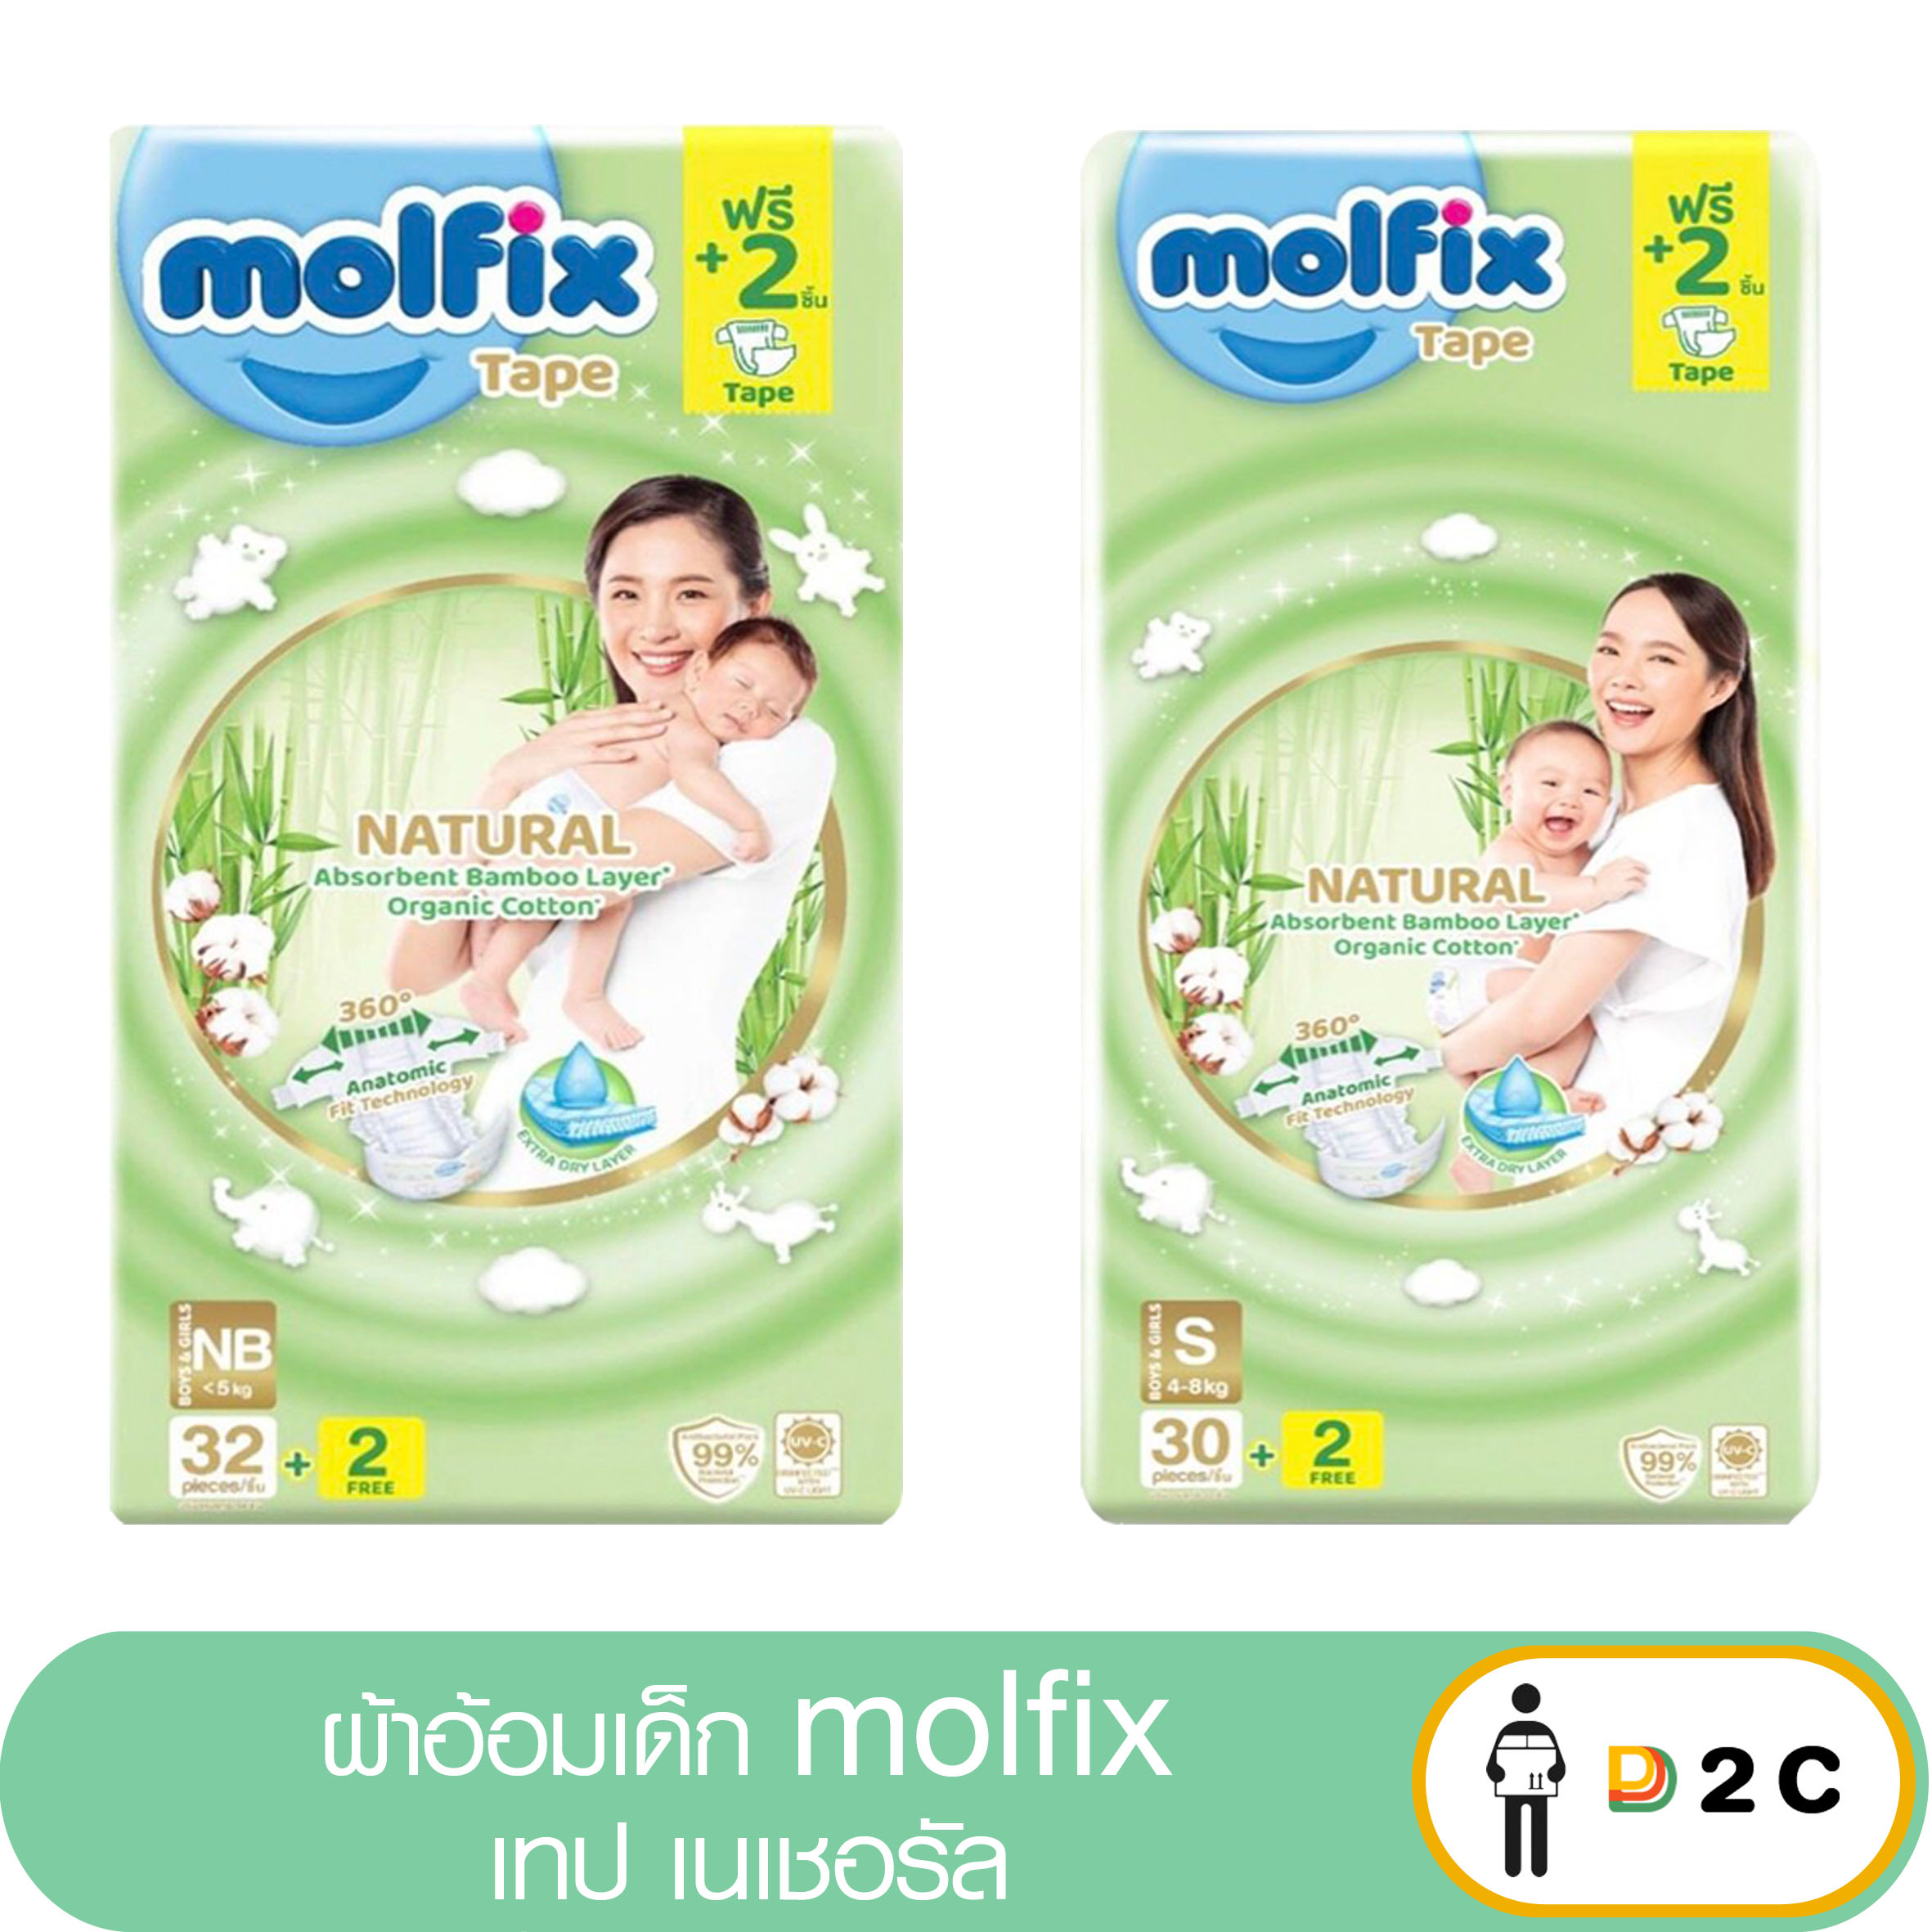 ห่อ] ผ้าอ้อมเด็กแรกเกิด โมฟิก Molfix Natural Tape เนเชอรัล เทป แพมเพิสเด็ก  - D2C Store - Thaipick